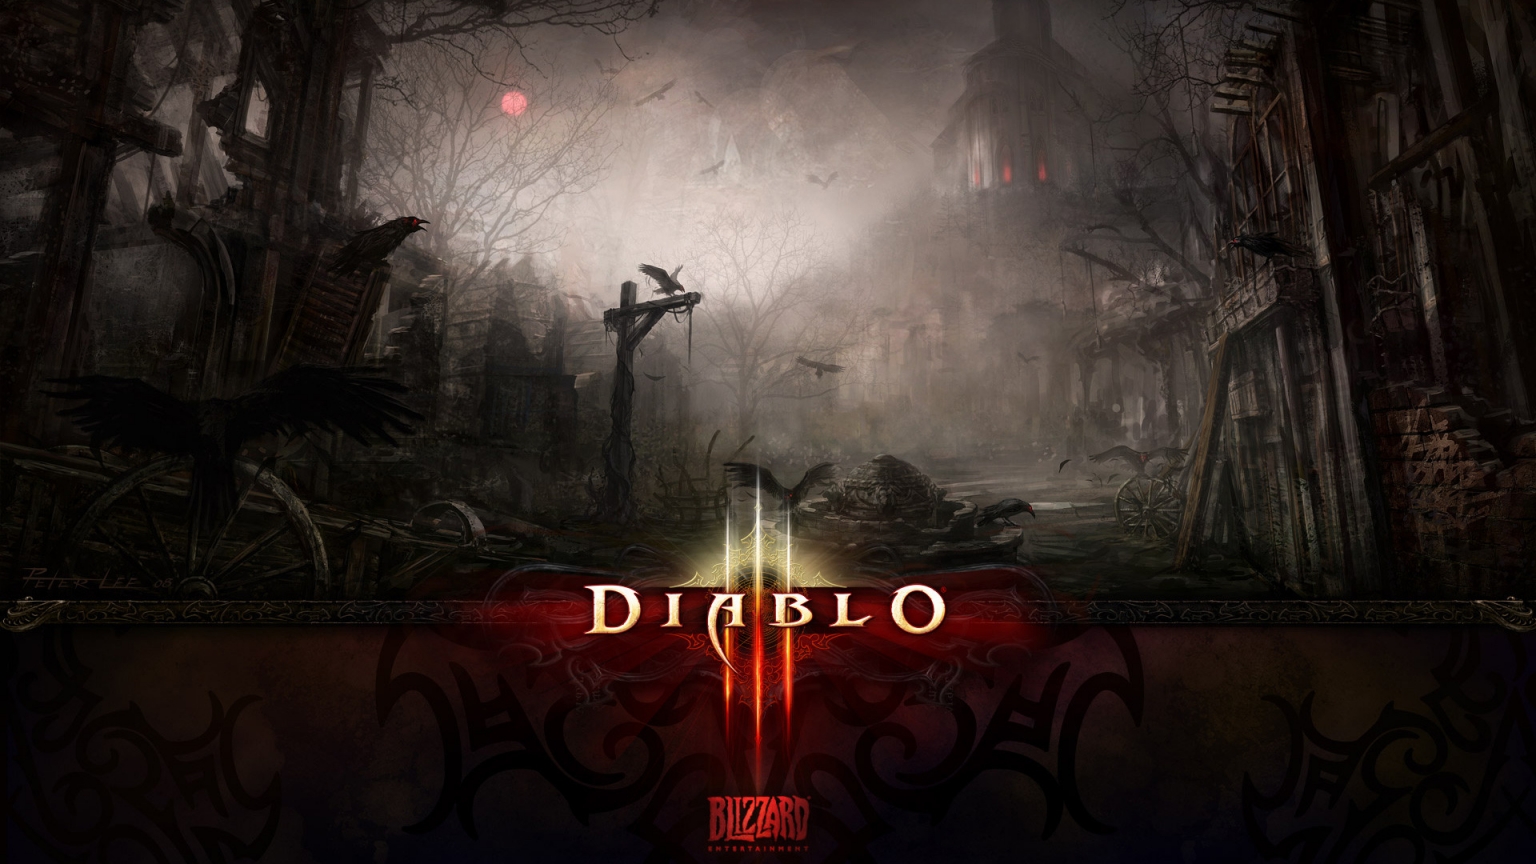 Dark Death Diablo 3 for 1536 x 864 HDTV resolution